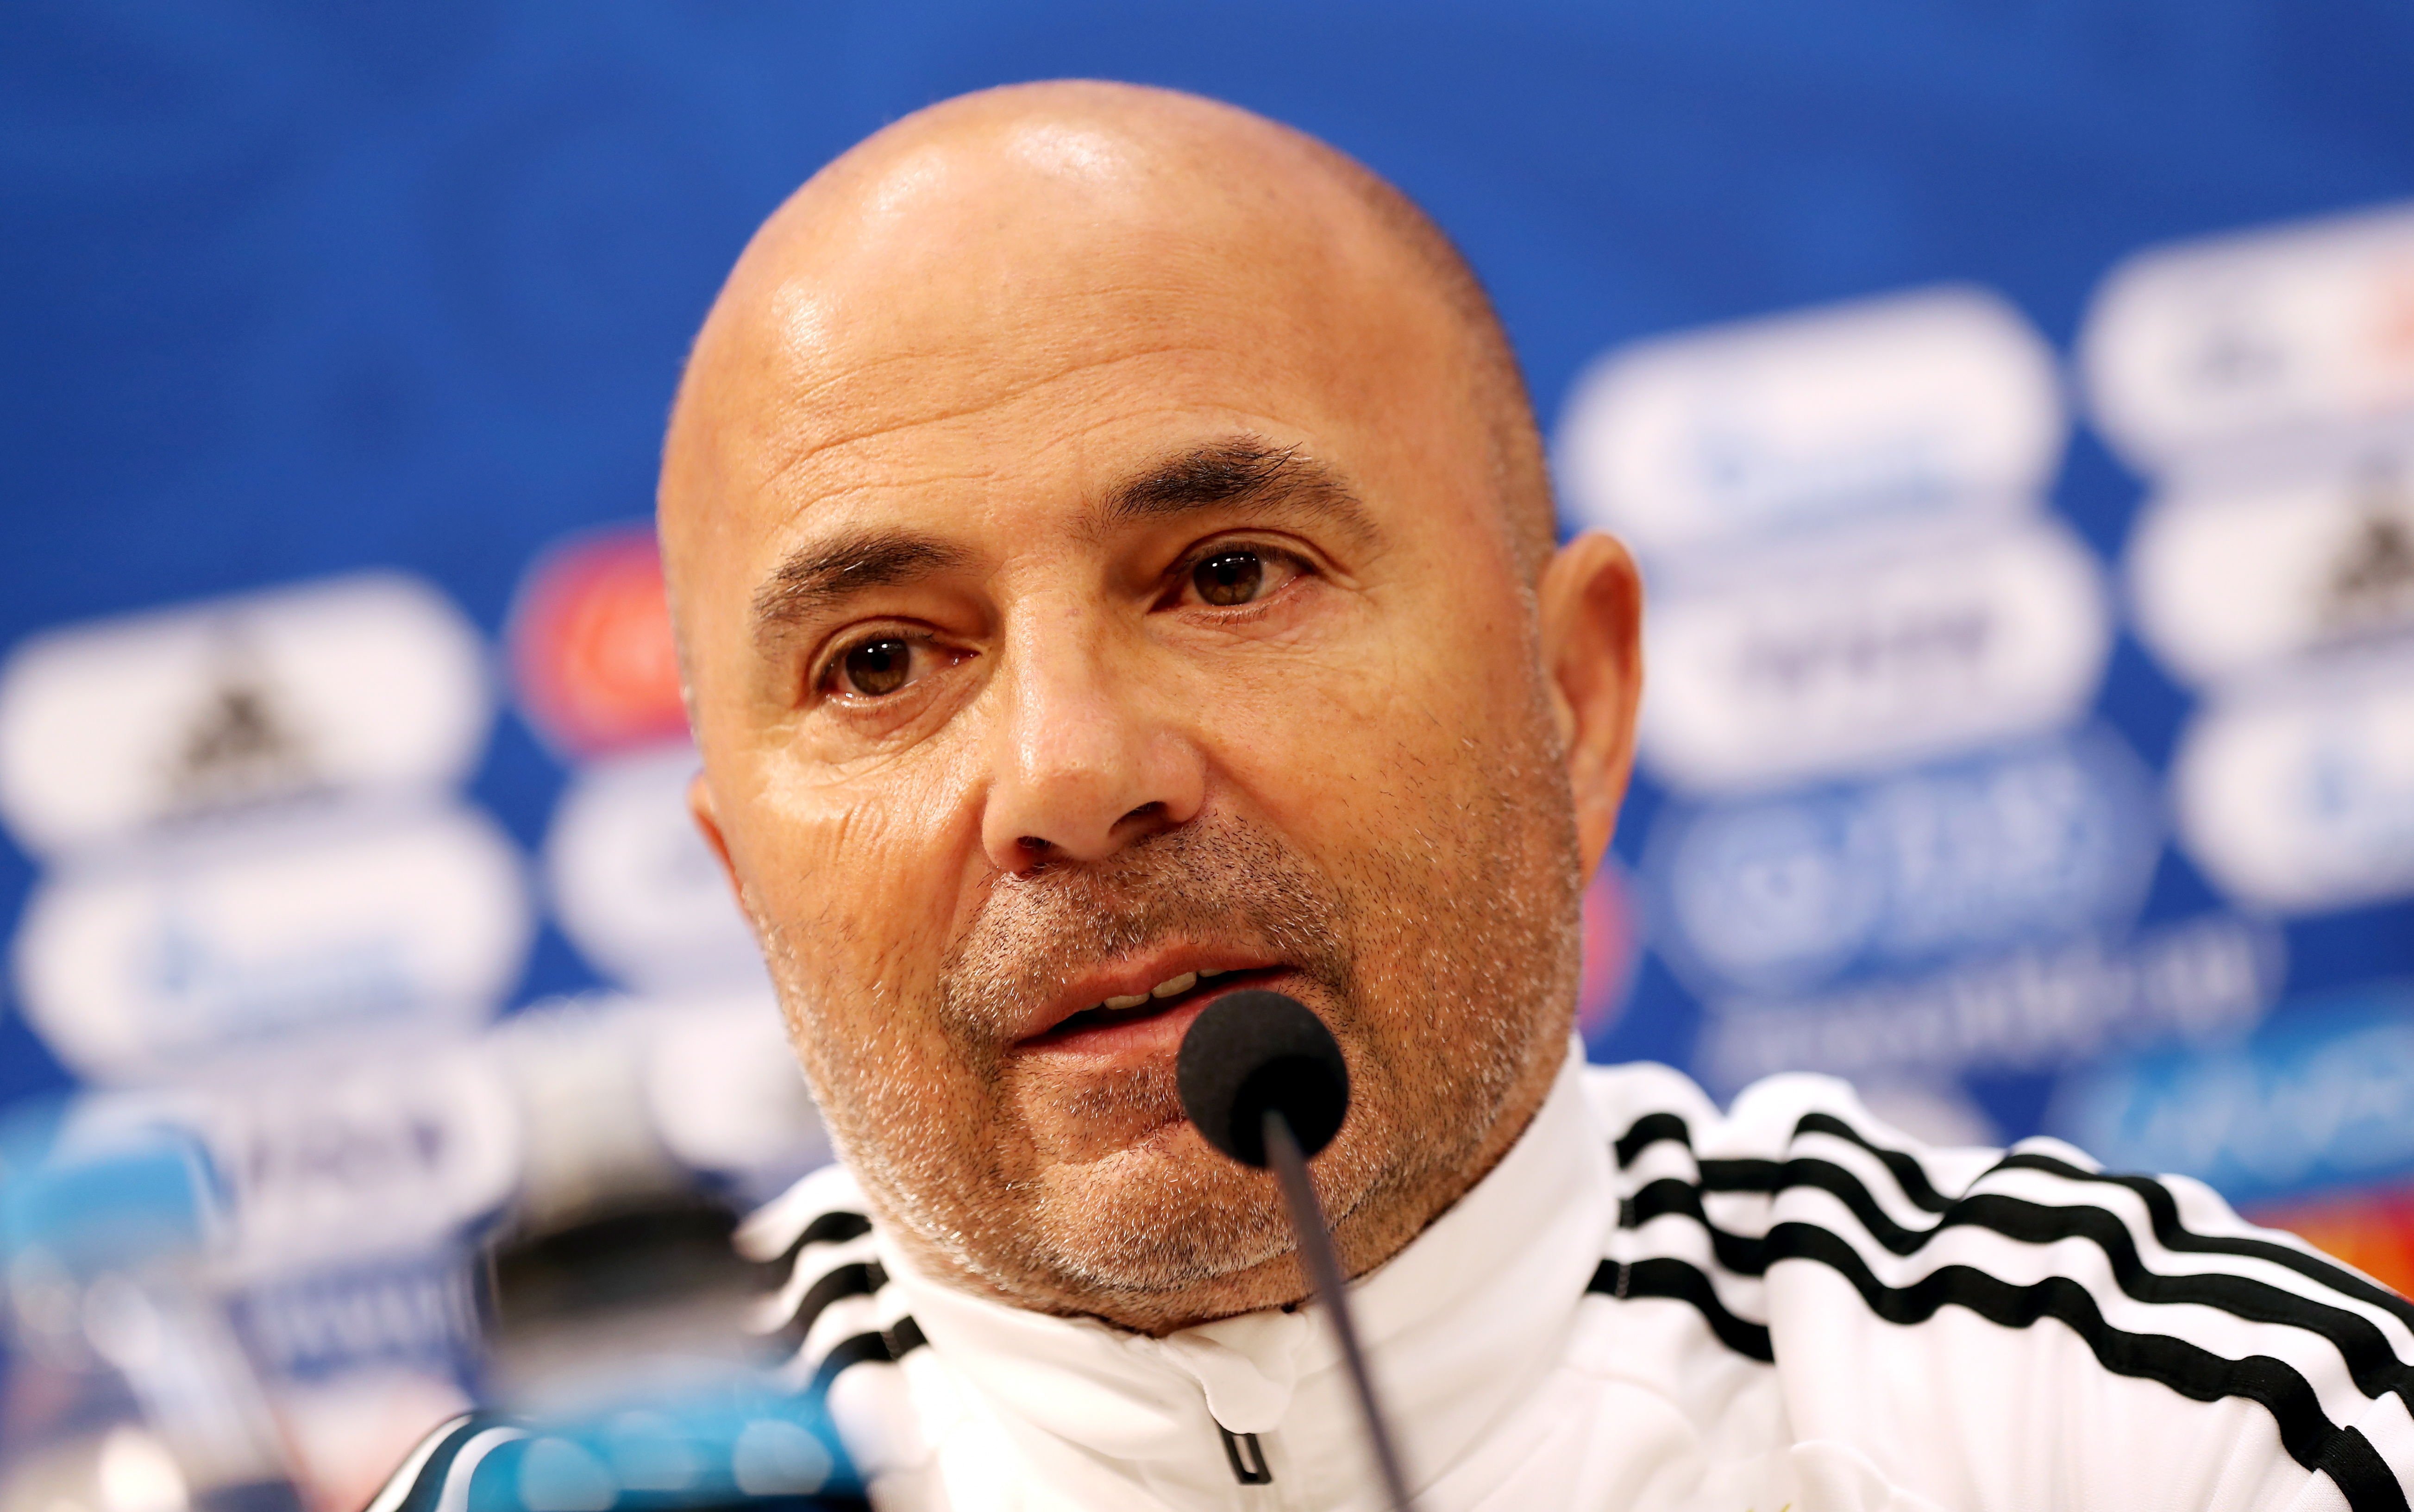 L'Argentina prescindeix de Jorge Sampaoli i ja busca nou entrenador